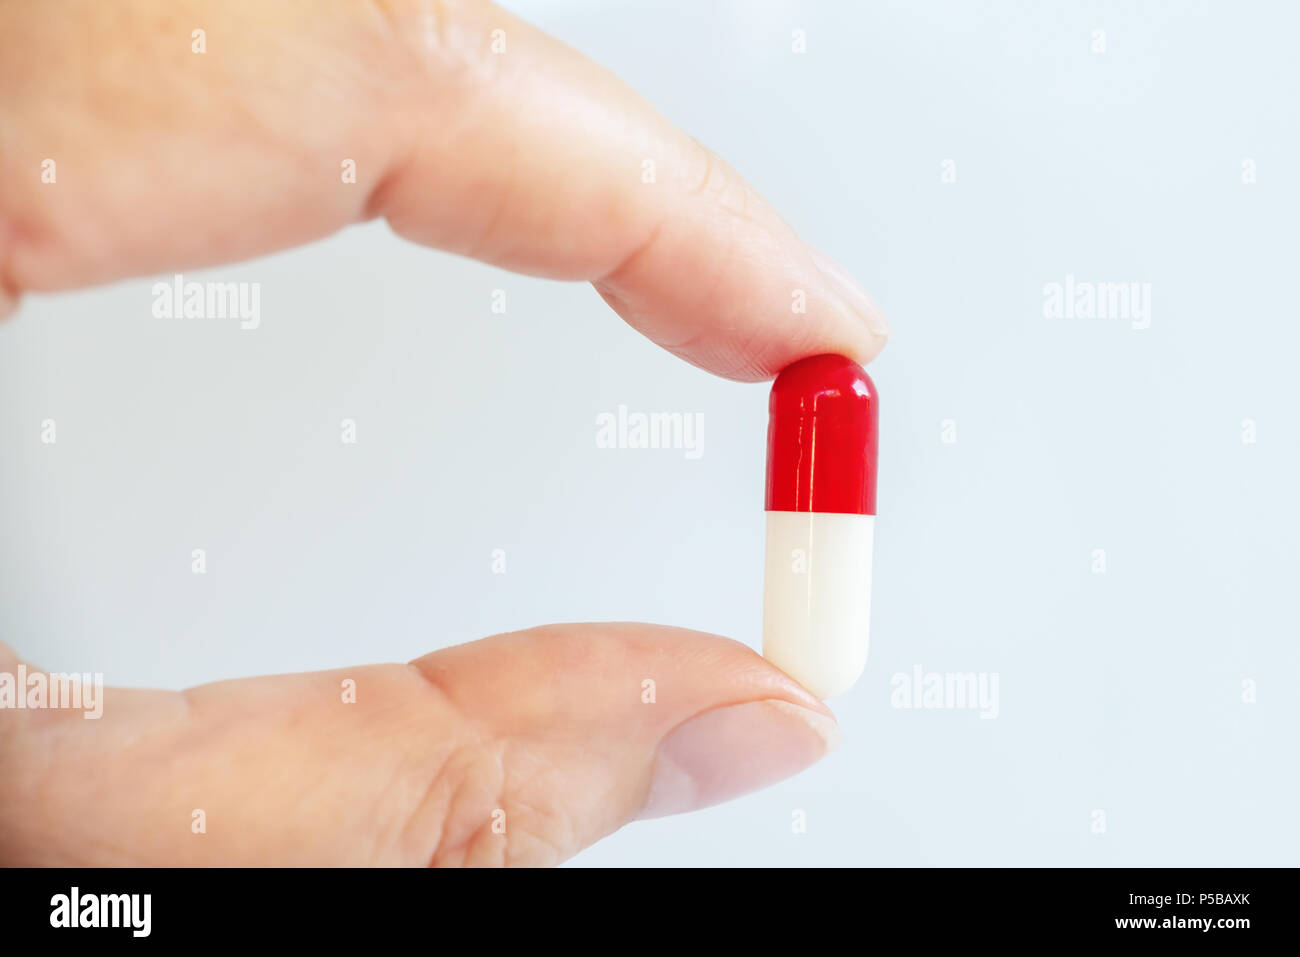 Primo piano di una mano che tiene un bianco e pillola rossa, salute e concetto di medicazione Foto Stock